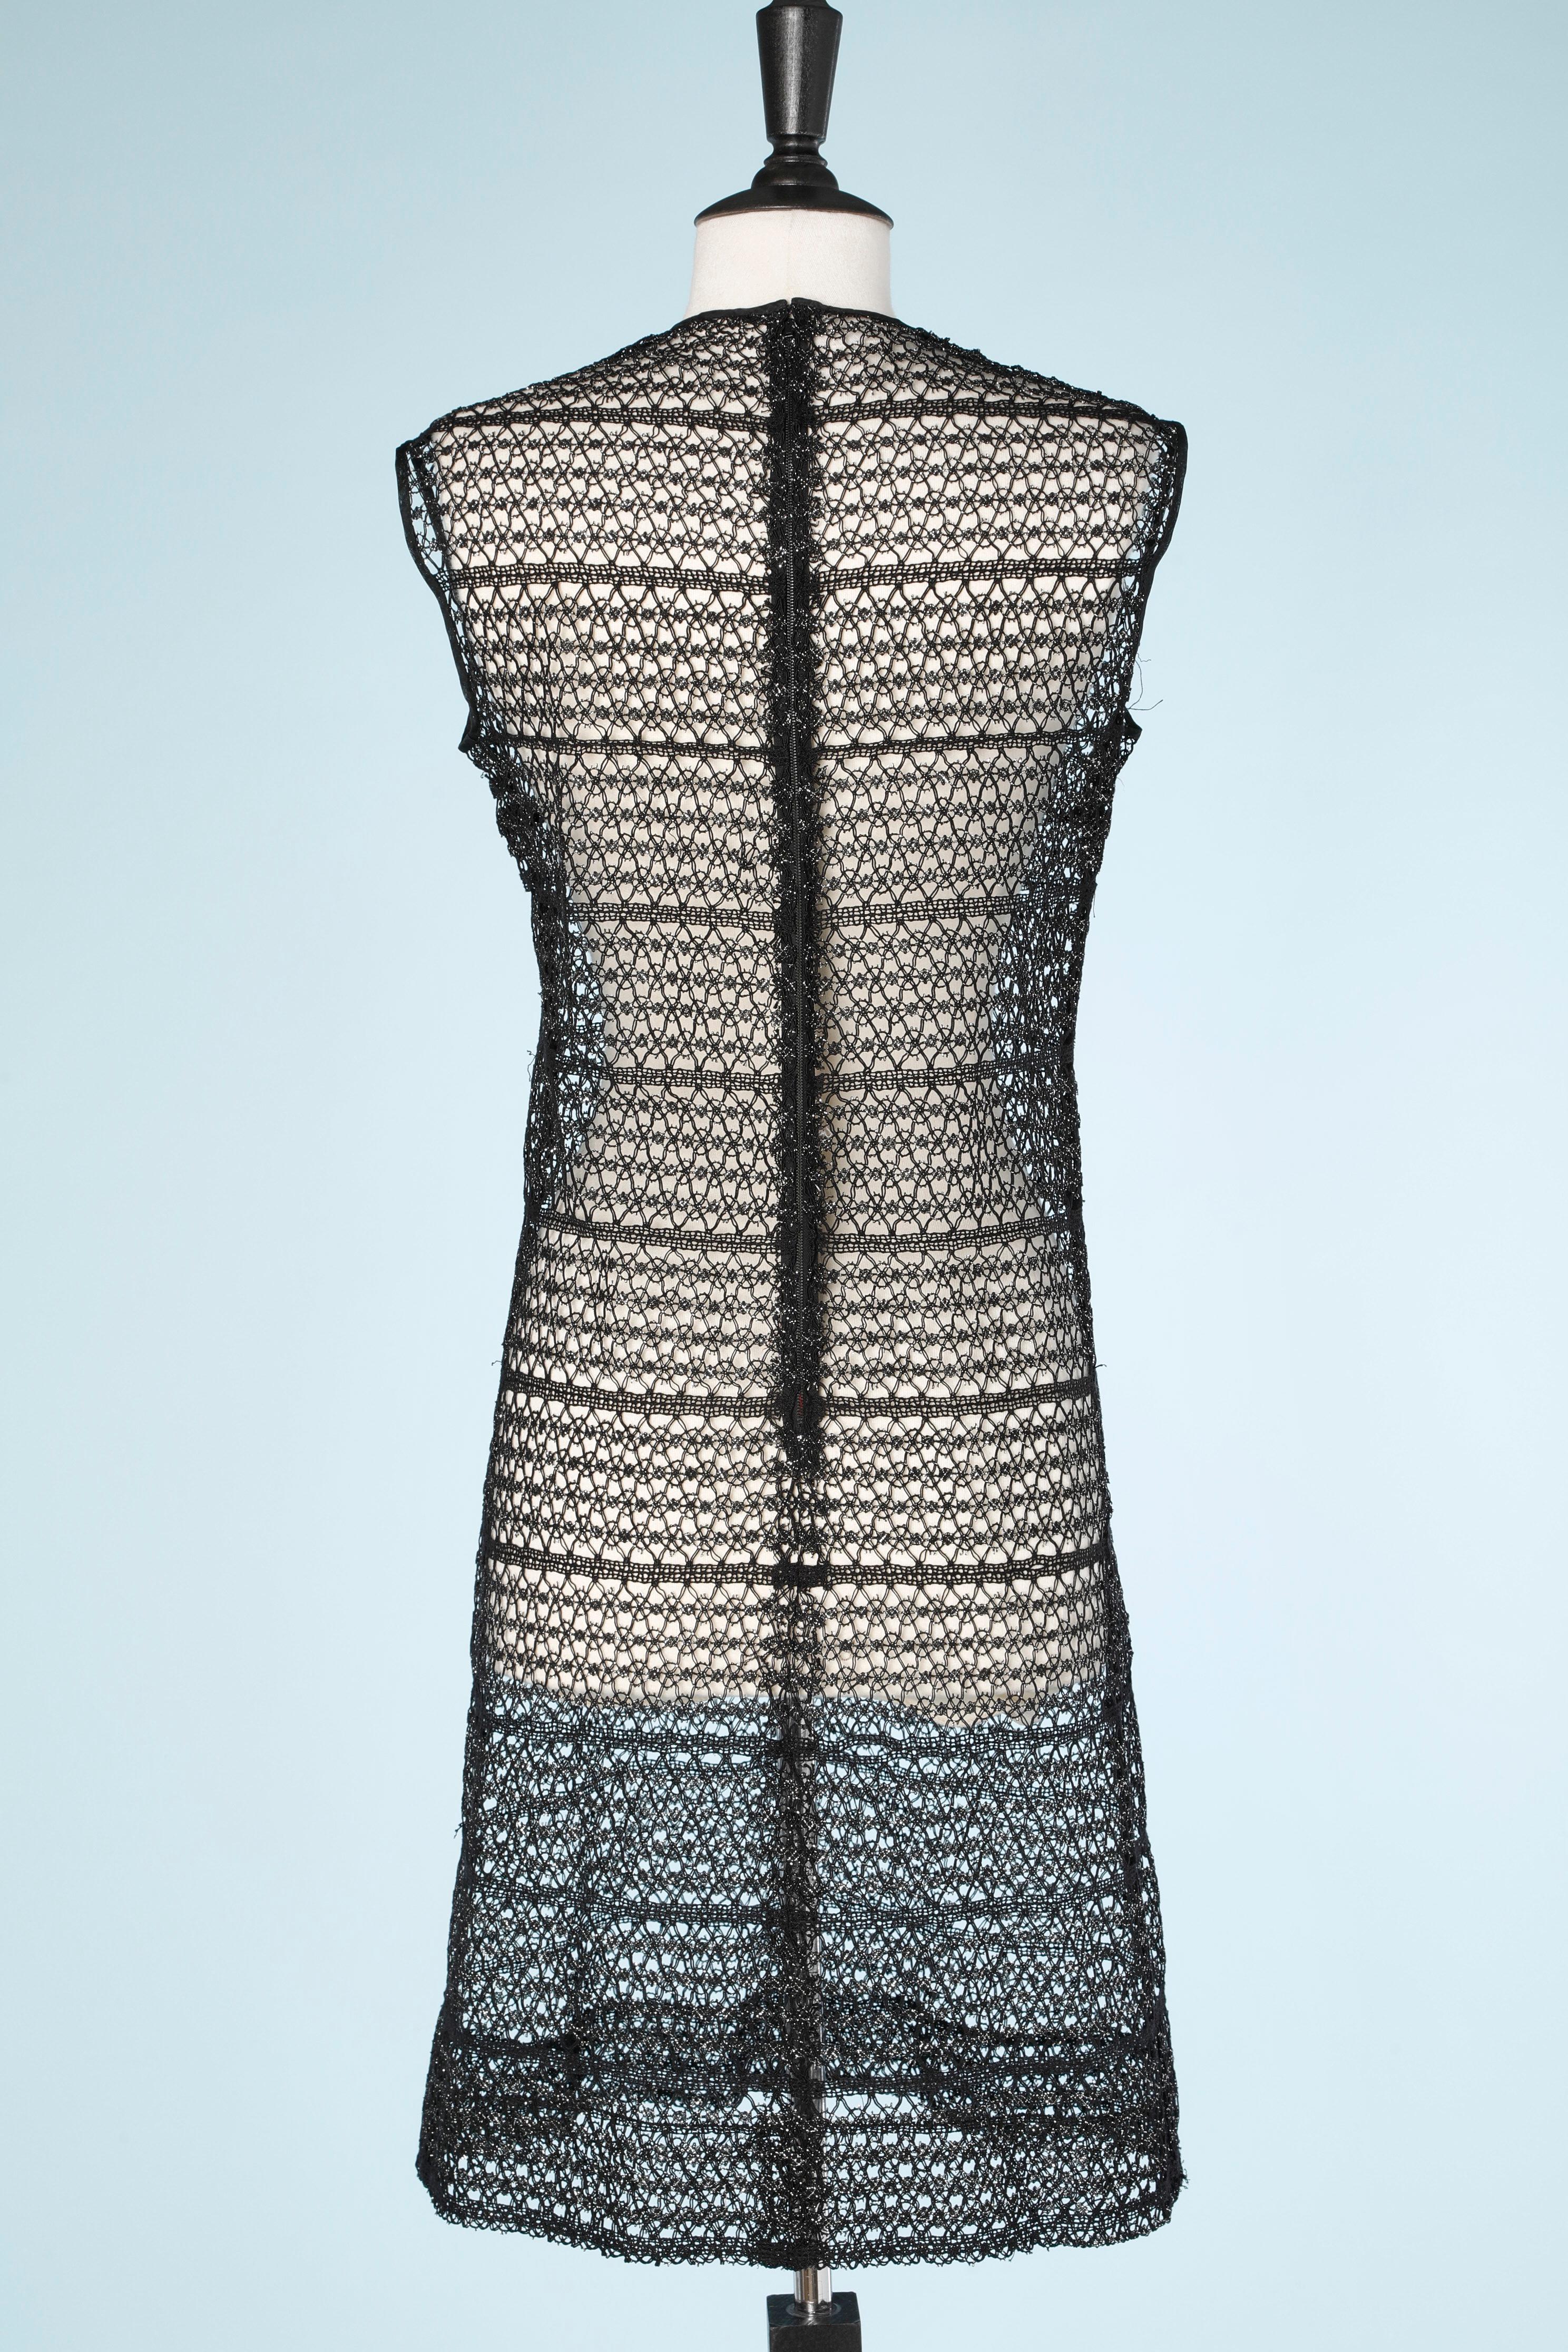 Black crochet 1960's dress  1